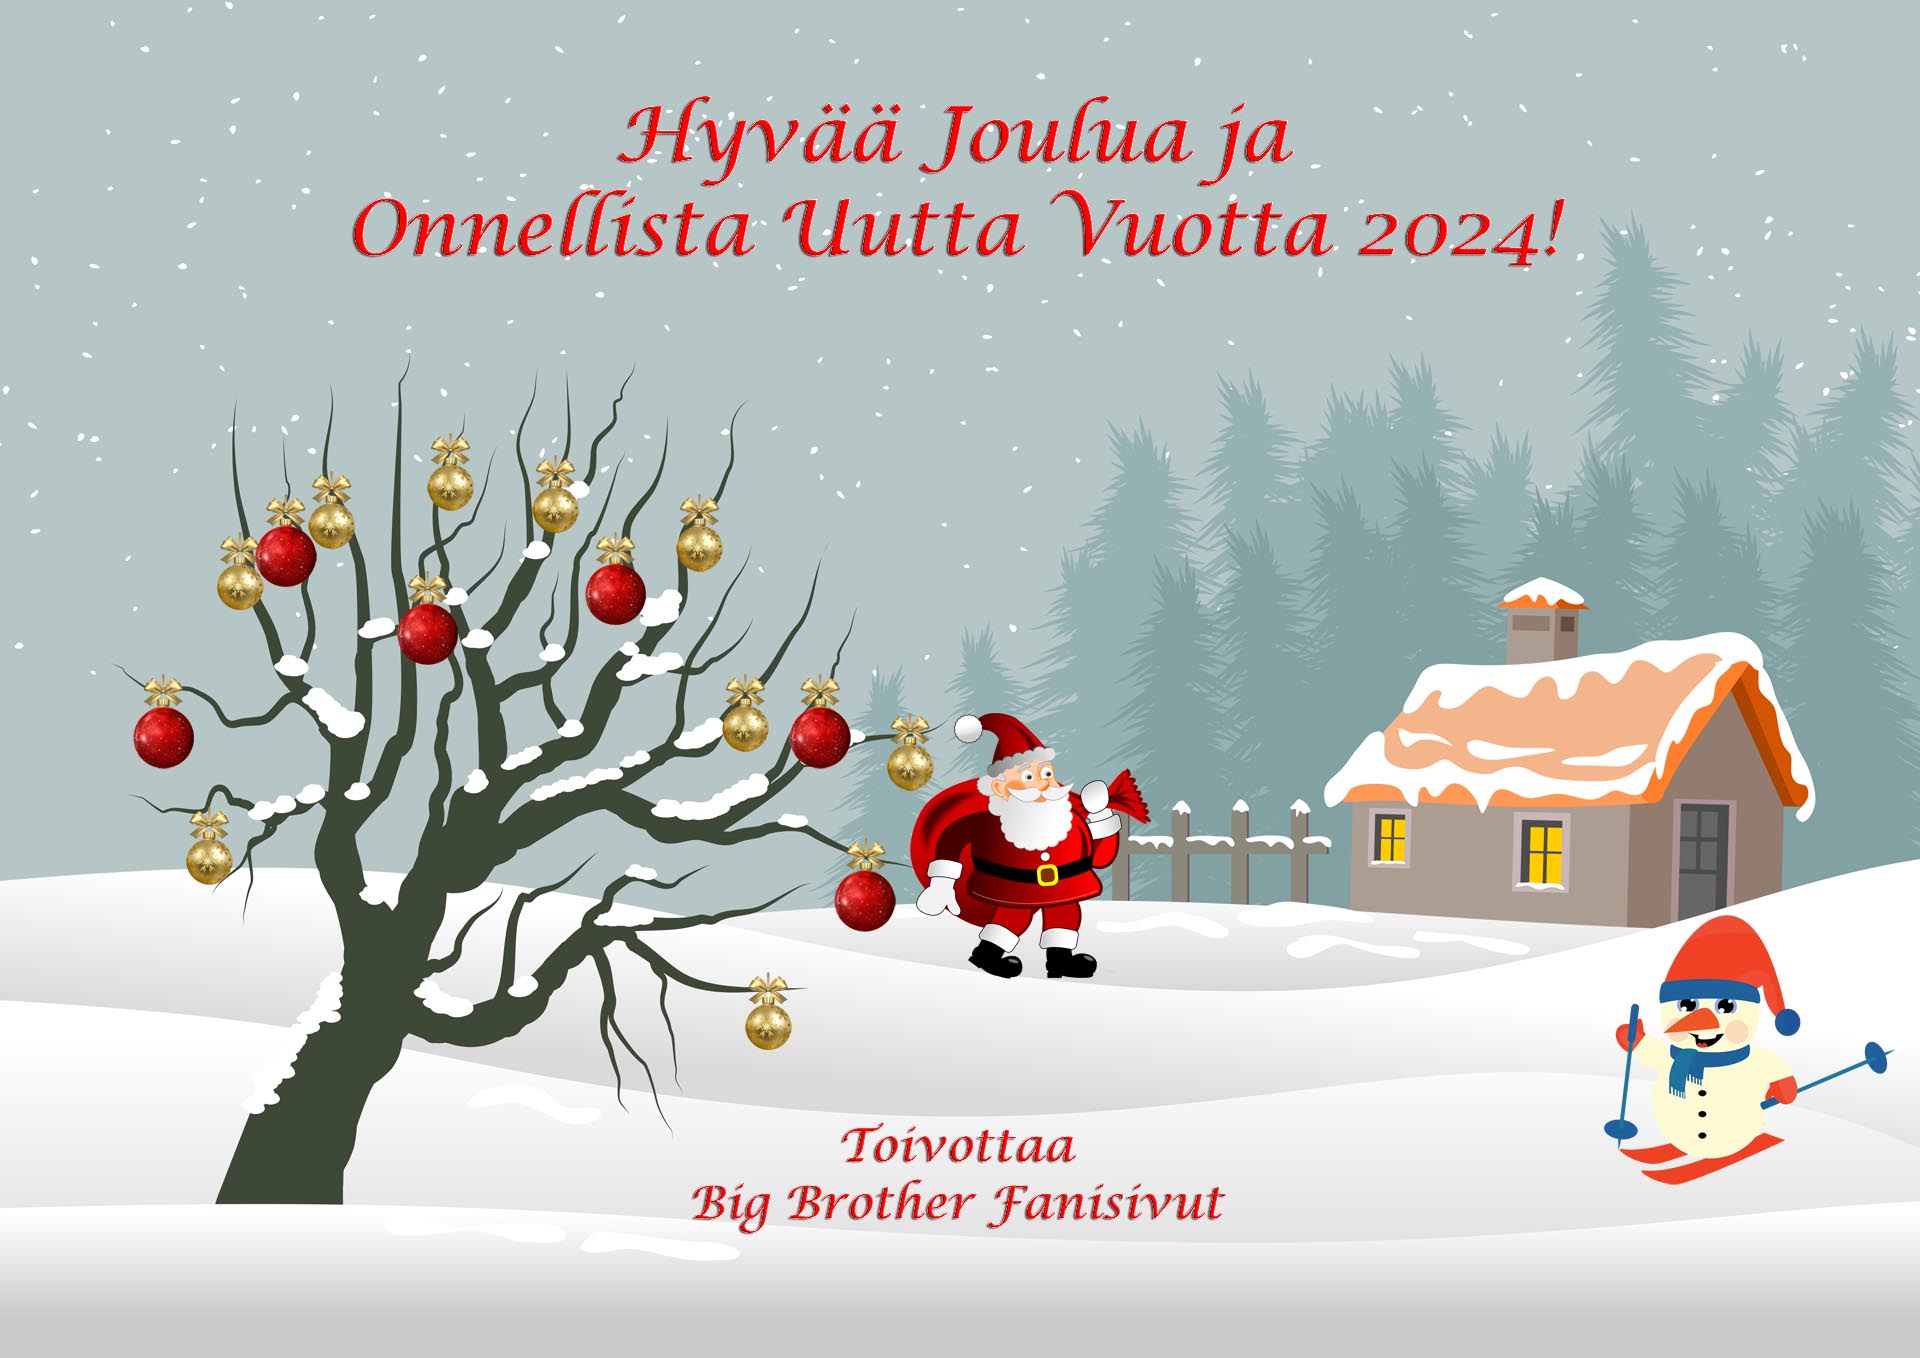 Hyvää joulua ja onnellista uutta vuotta! Kuva: © Pixabay.com. Kuvankäsittely: Jarkko Nieminen / Fanisivut.net.